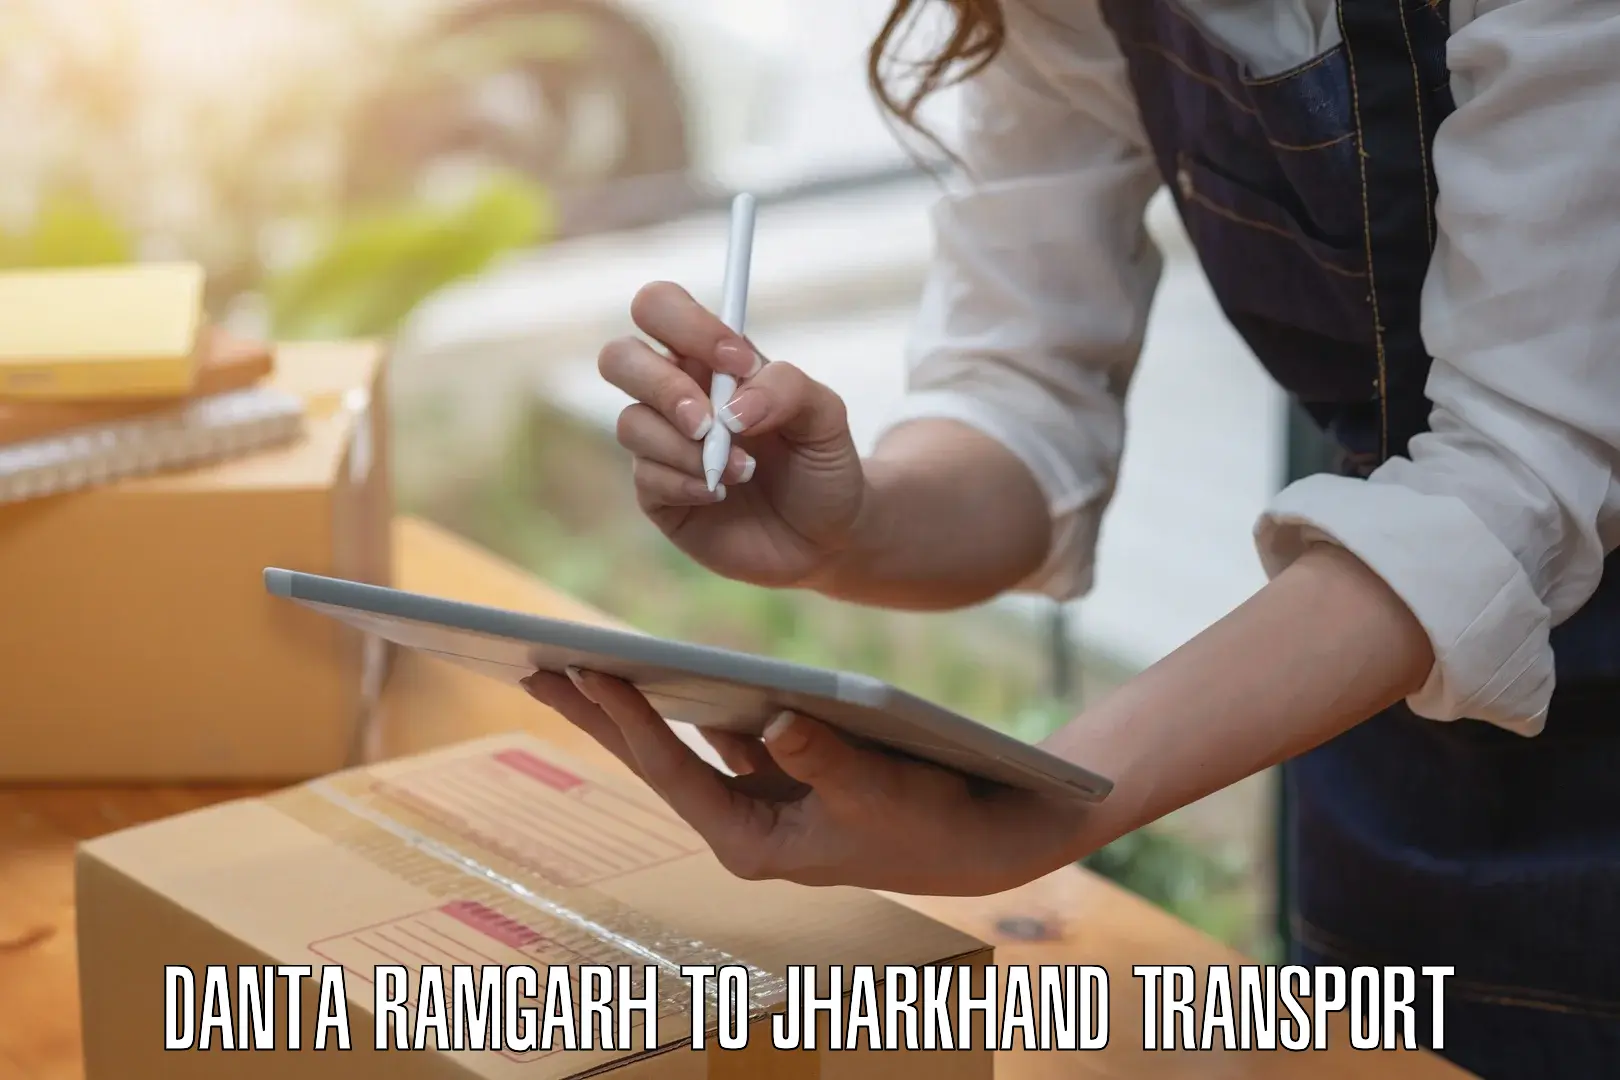 Interstate transport services Danta Ramgarh to Seraikela Kharsawan